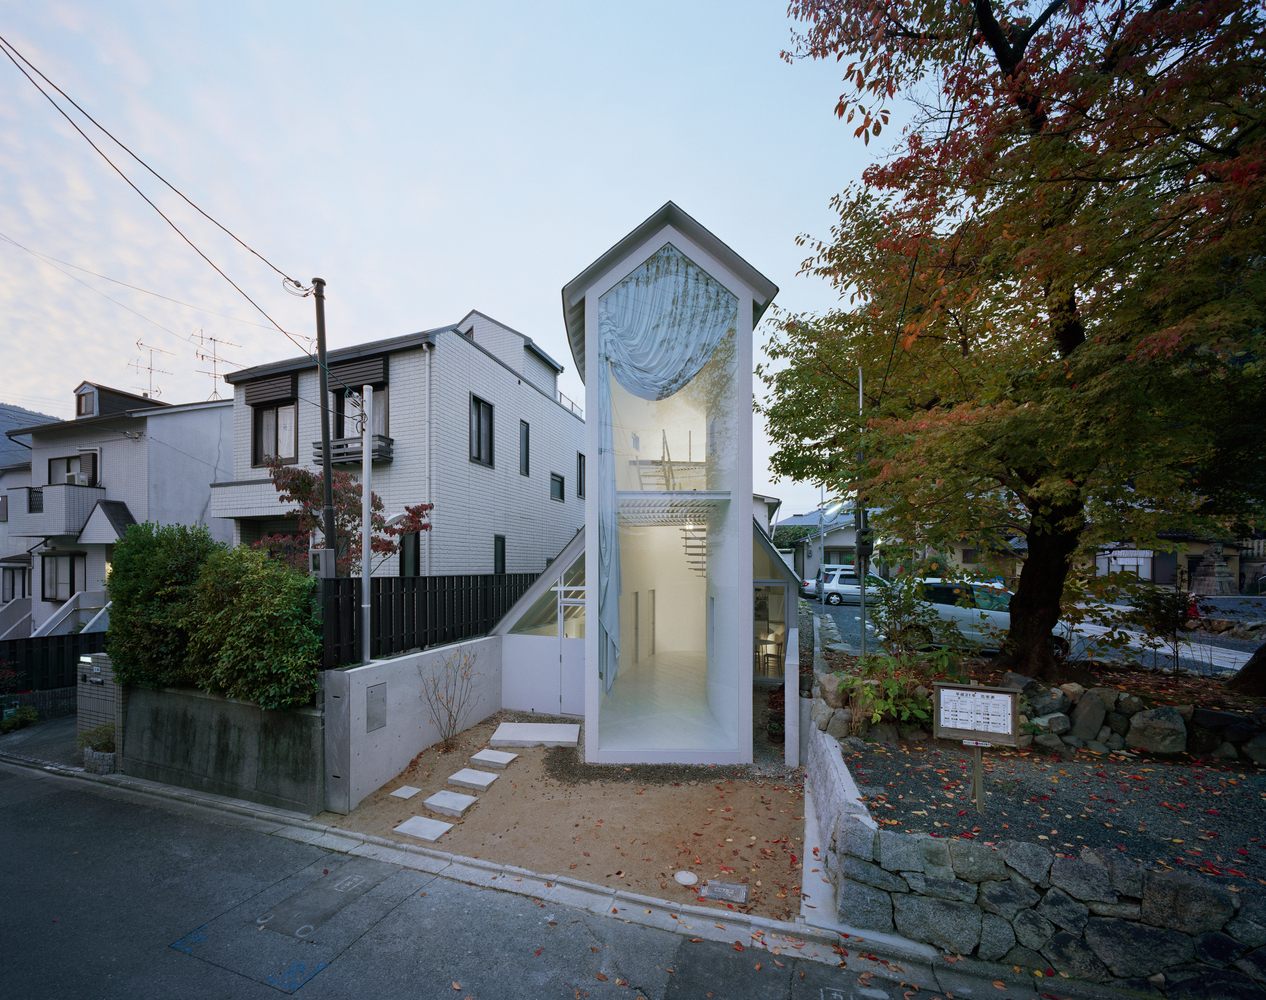 Mikro domy HOUSES KYOTO JAPAN